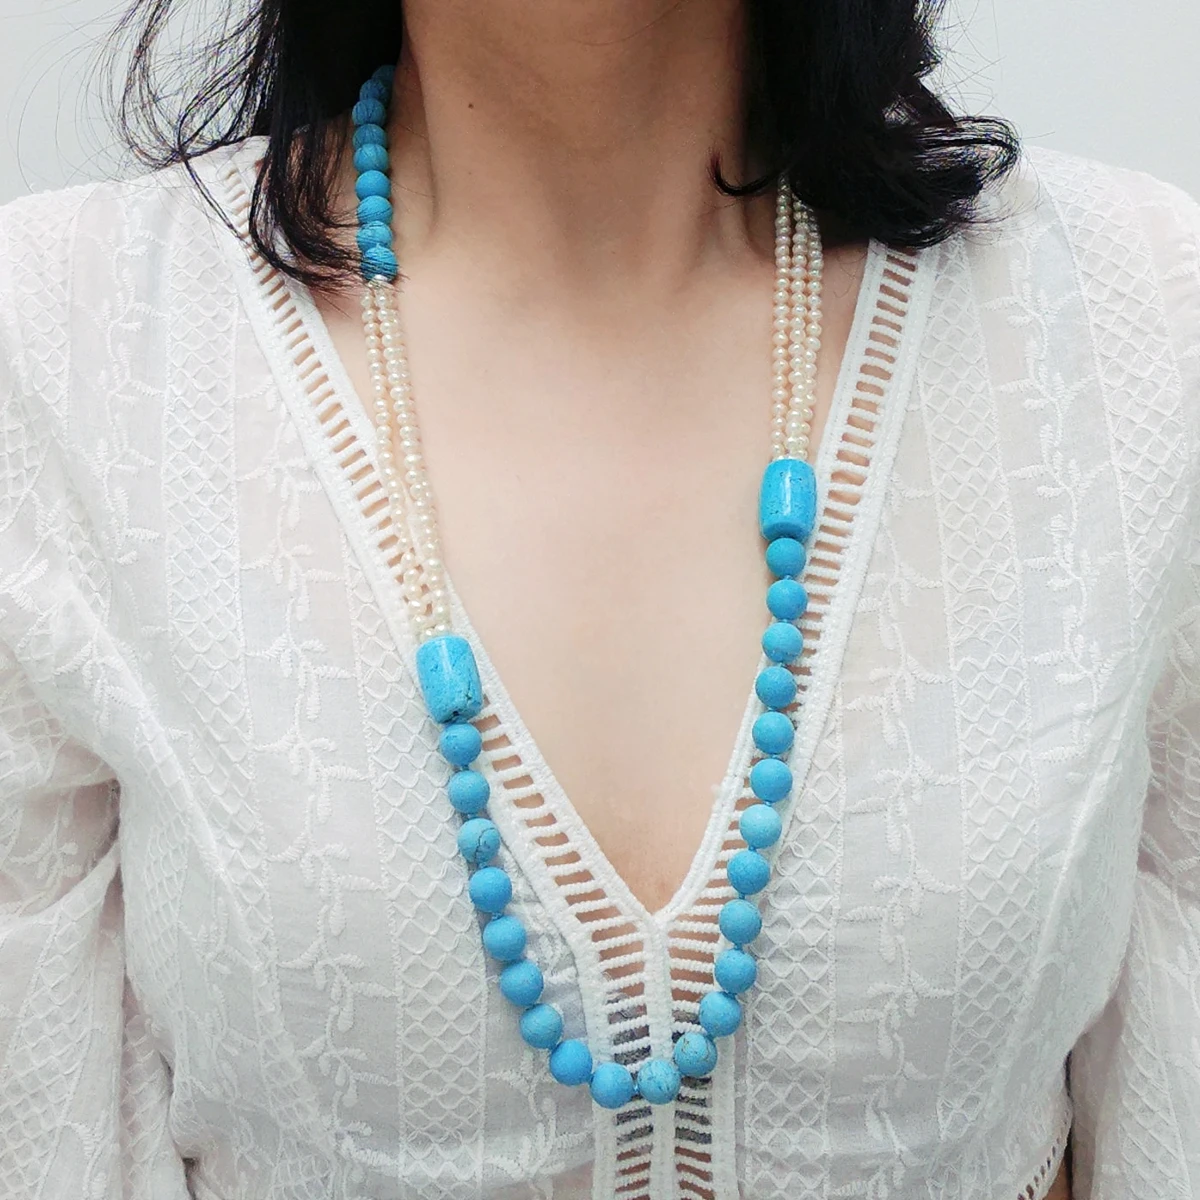 

Lii Ji голубое и белое длинное ожерелье 78 см реальный жемчуг уникальное ожерелье женские ювелирные изделия подарок